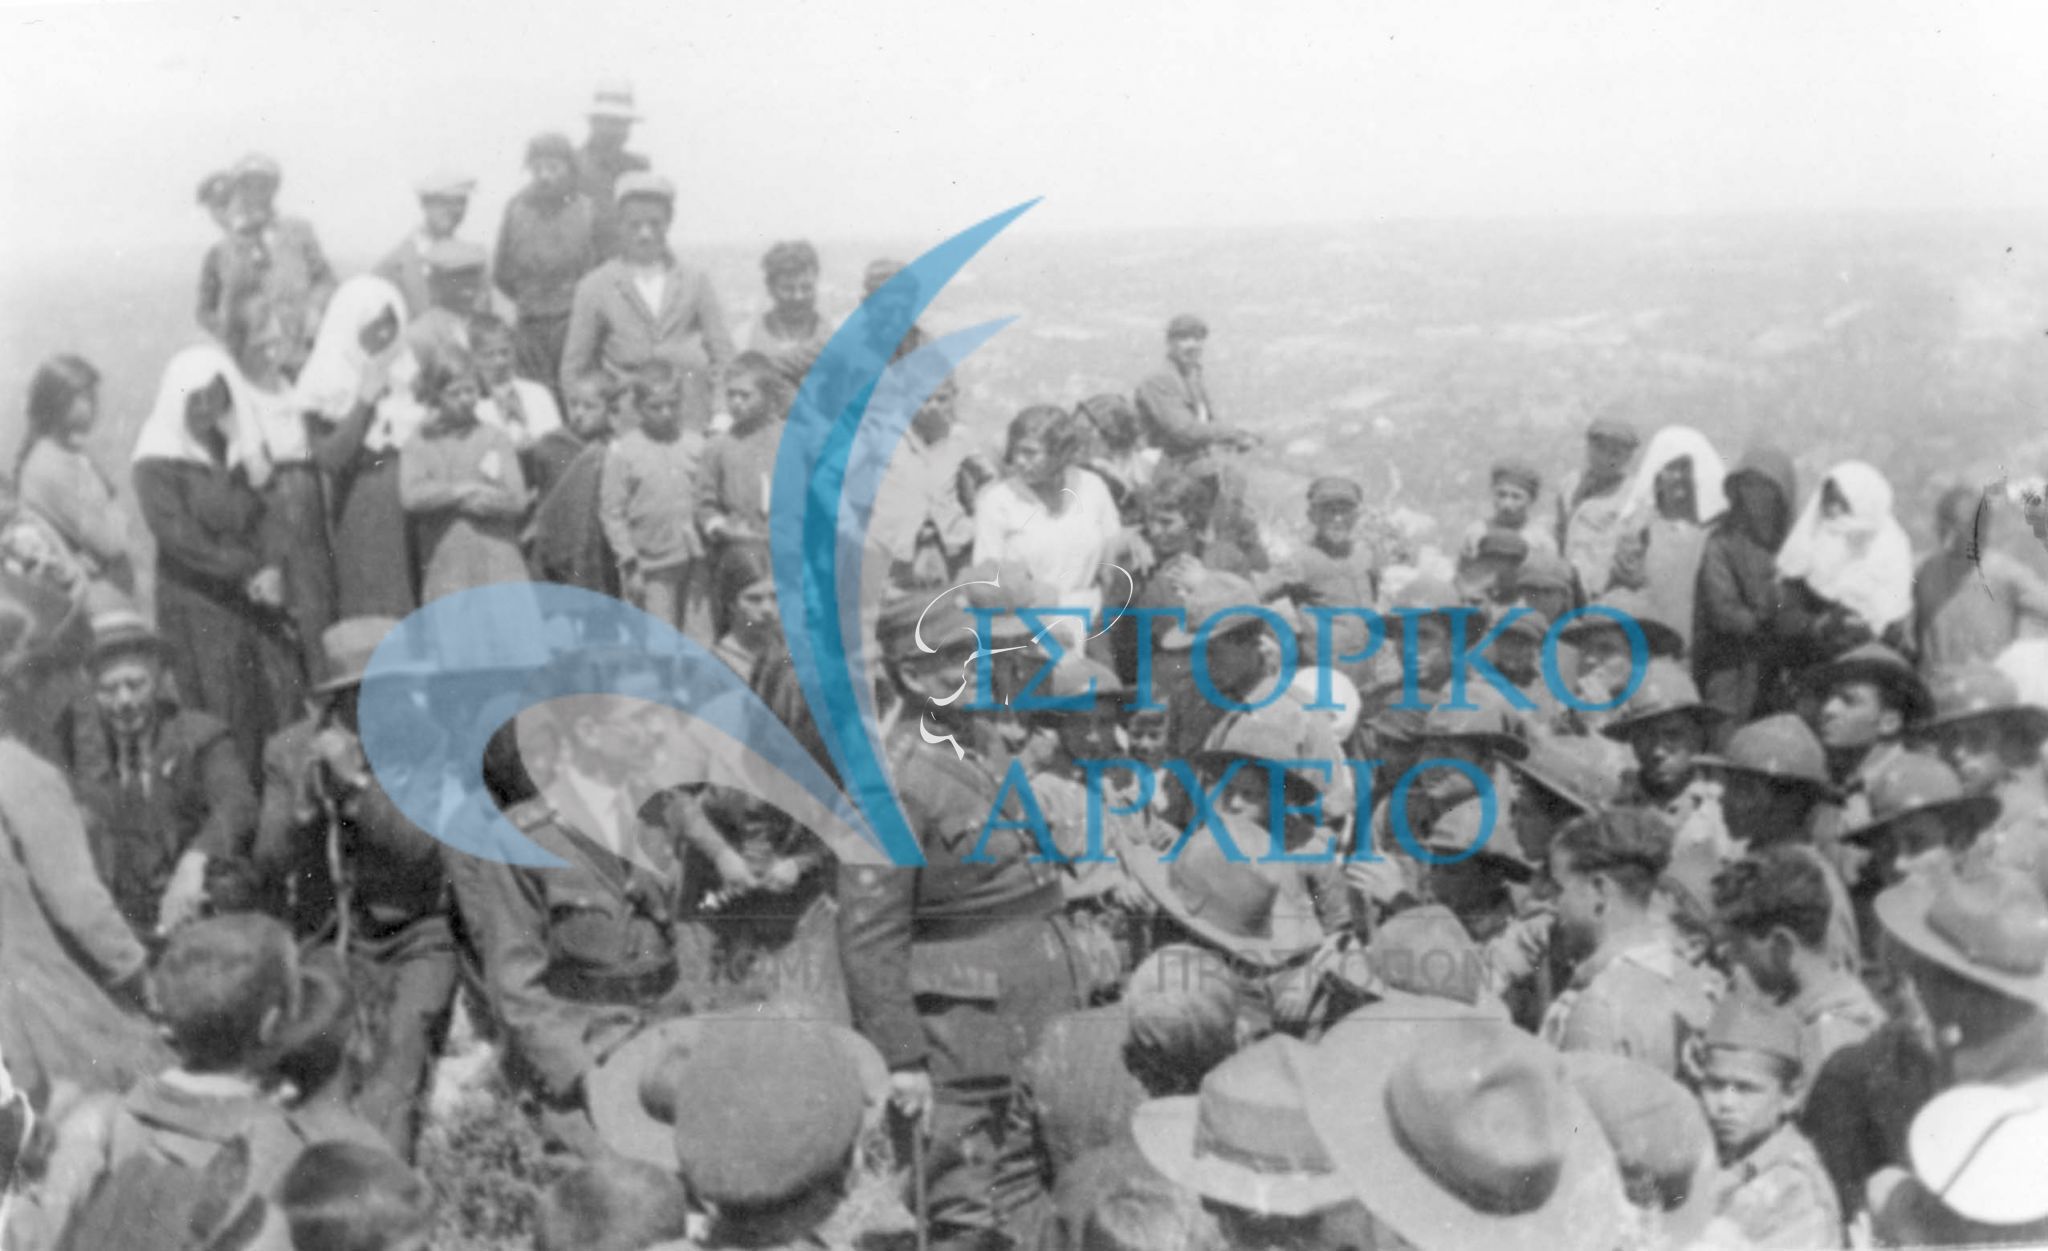 Η 3η Ομάδα Χανίων σε διήμερη εκδρομή στο χωρίο Κυδωνιες το 1931. Στο μέσο των προσκόπων ο Λοχαγός Παπαμαρκάκης με τον Τοπικό Εφόρο Αντ. Βιστάκη και τον ΠΕ Κ. Καλαμικέρη ομιλούν στους συγκεντρωμένους.